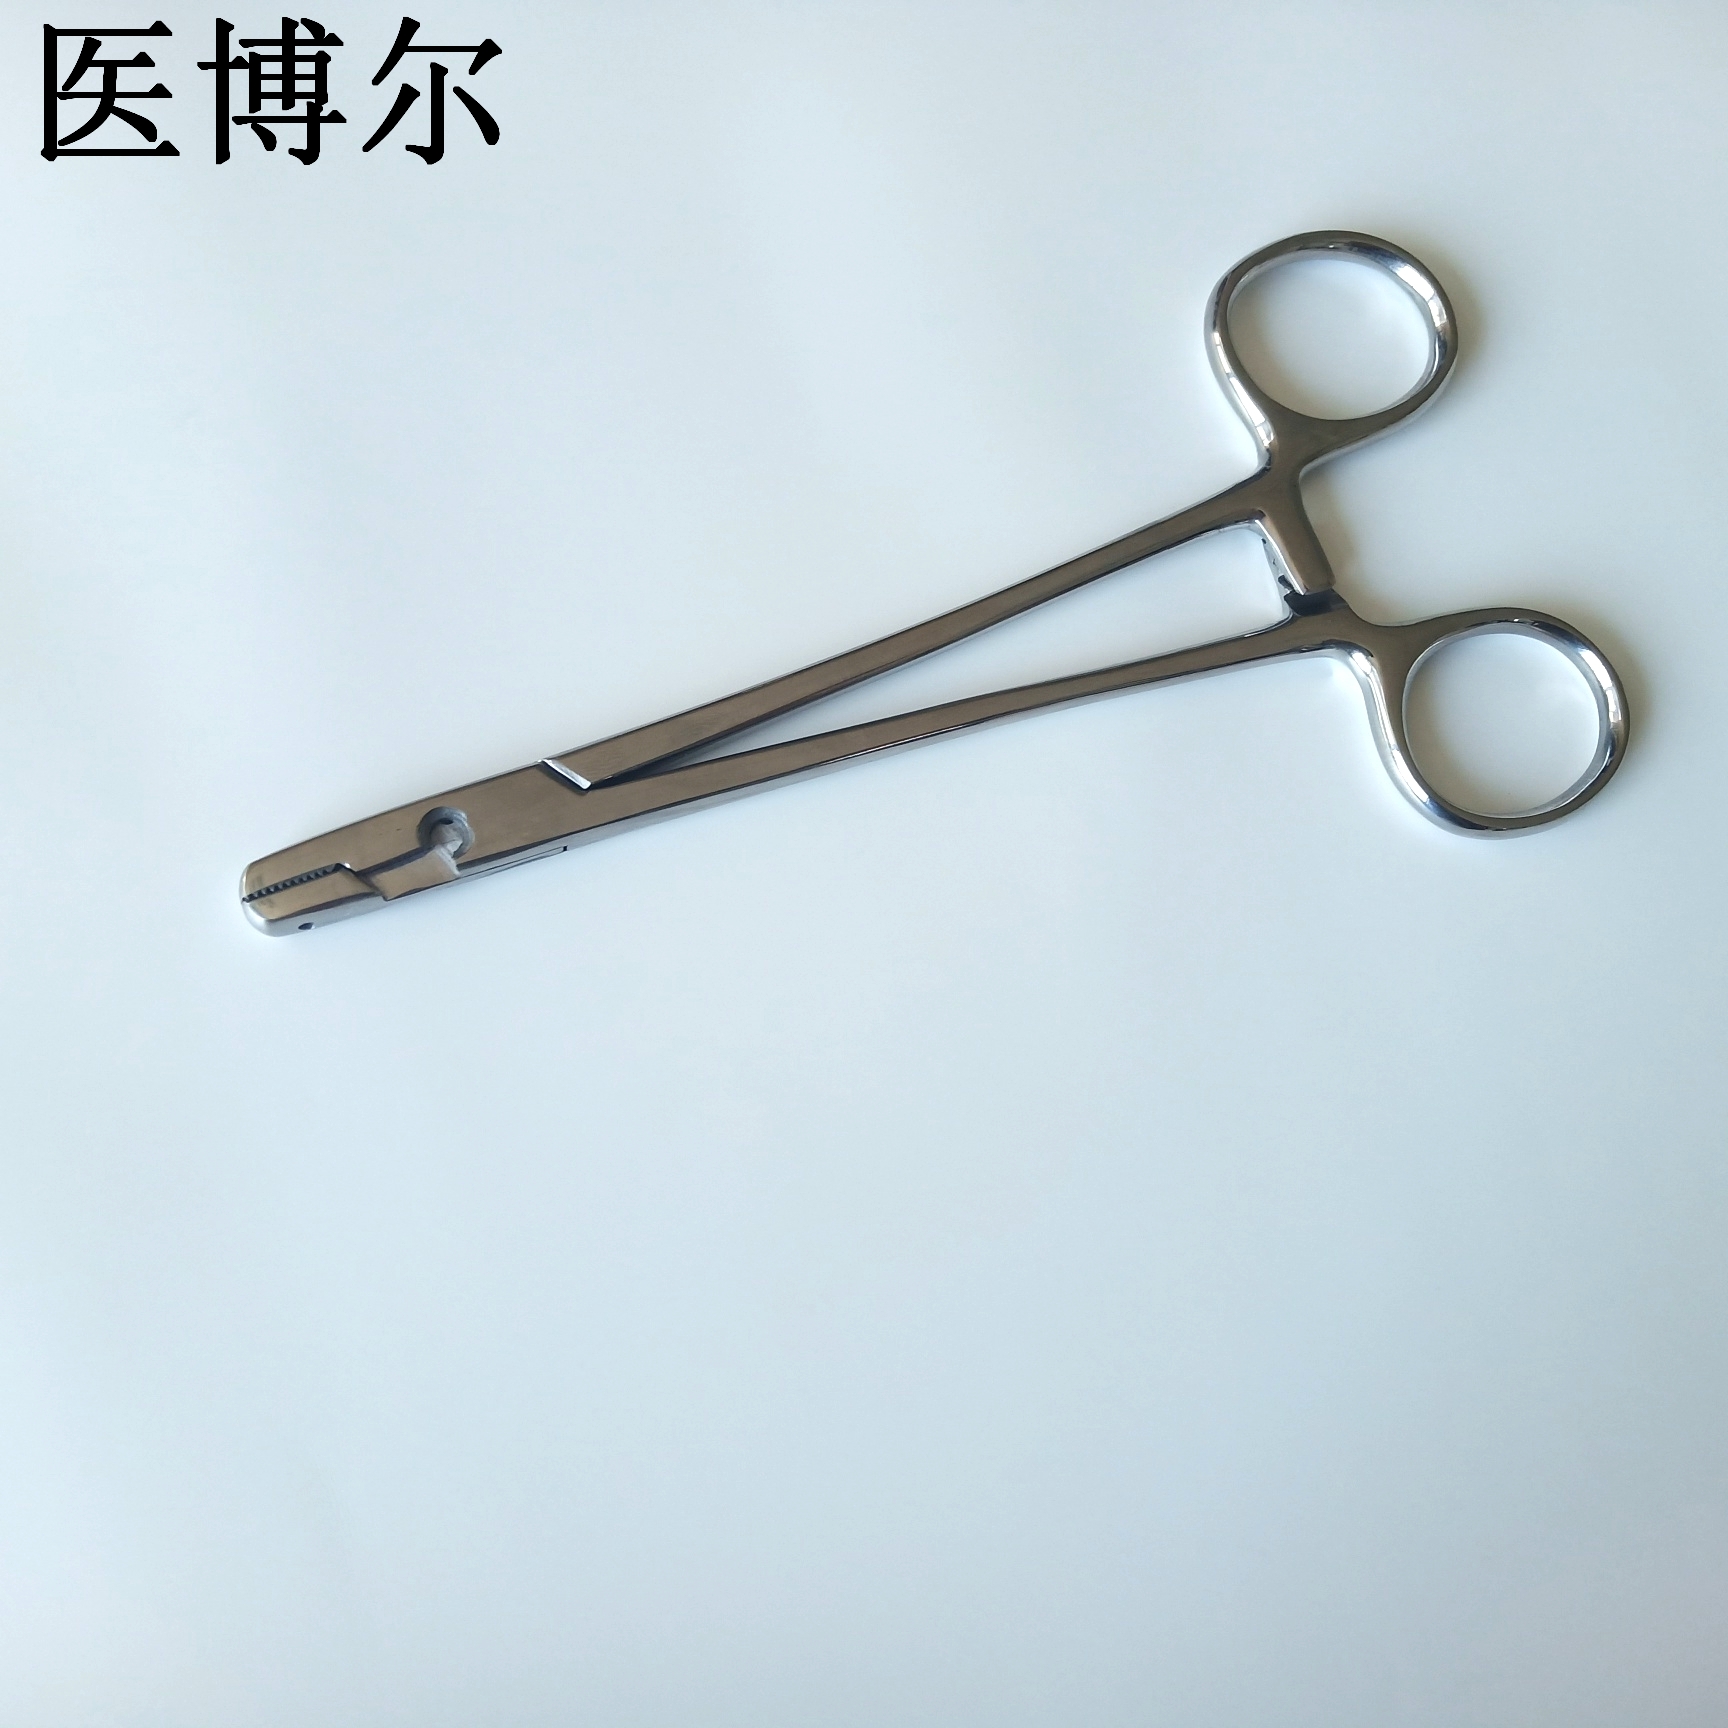 16cm钢丝钳 (3)_看图王.jpg